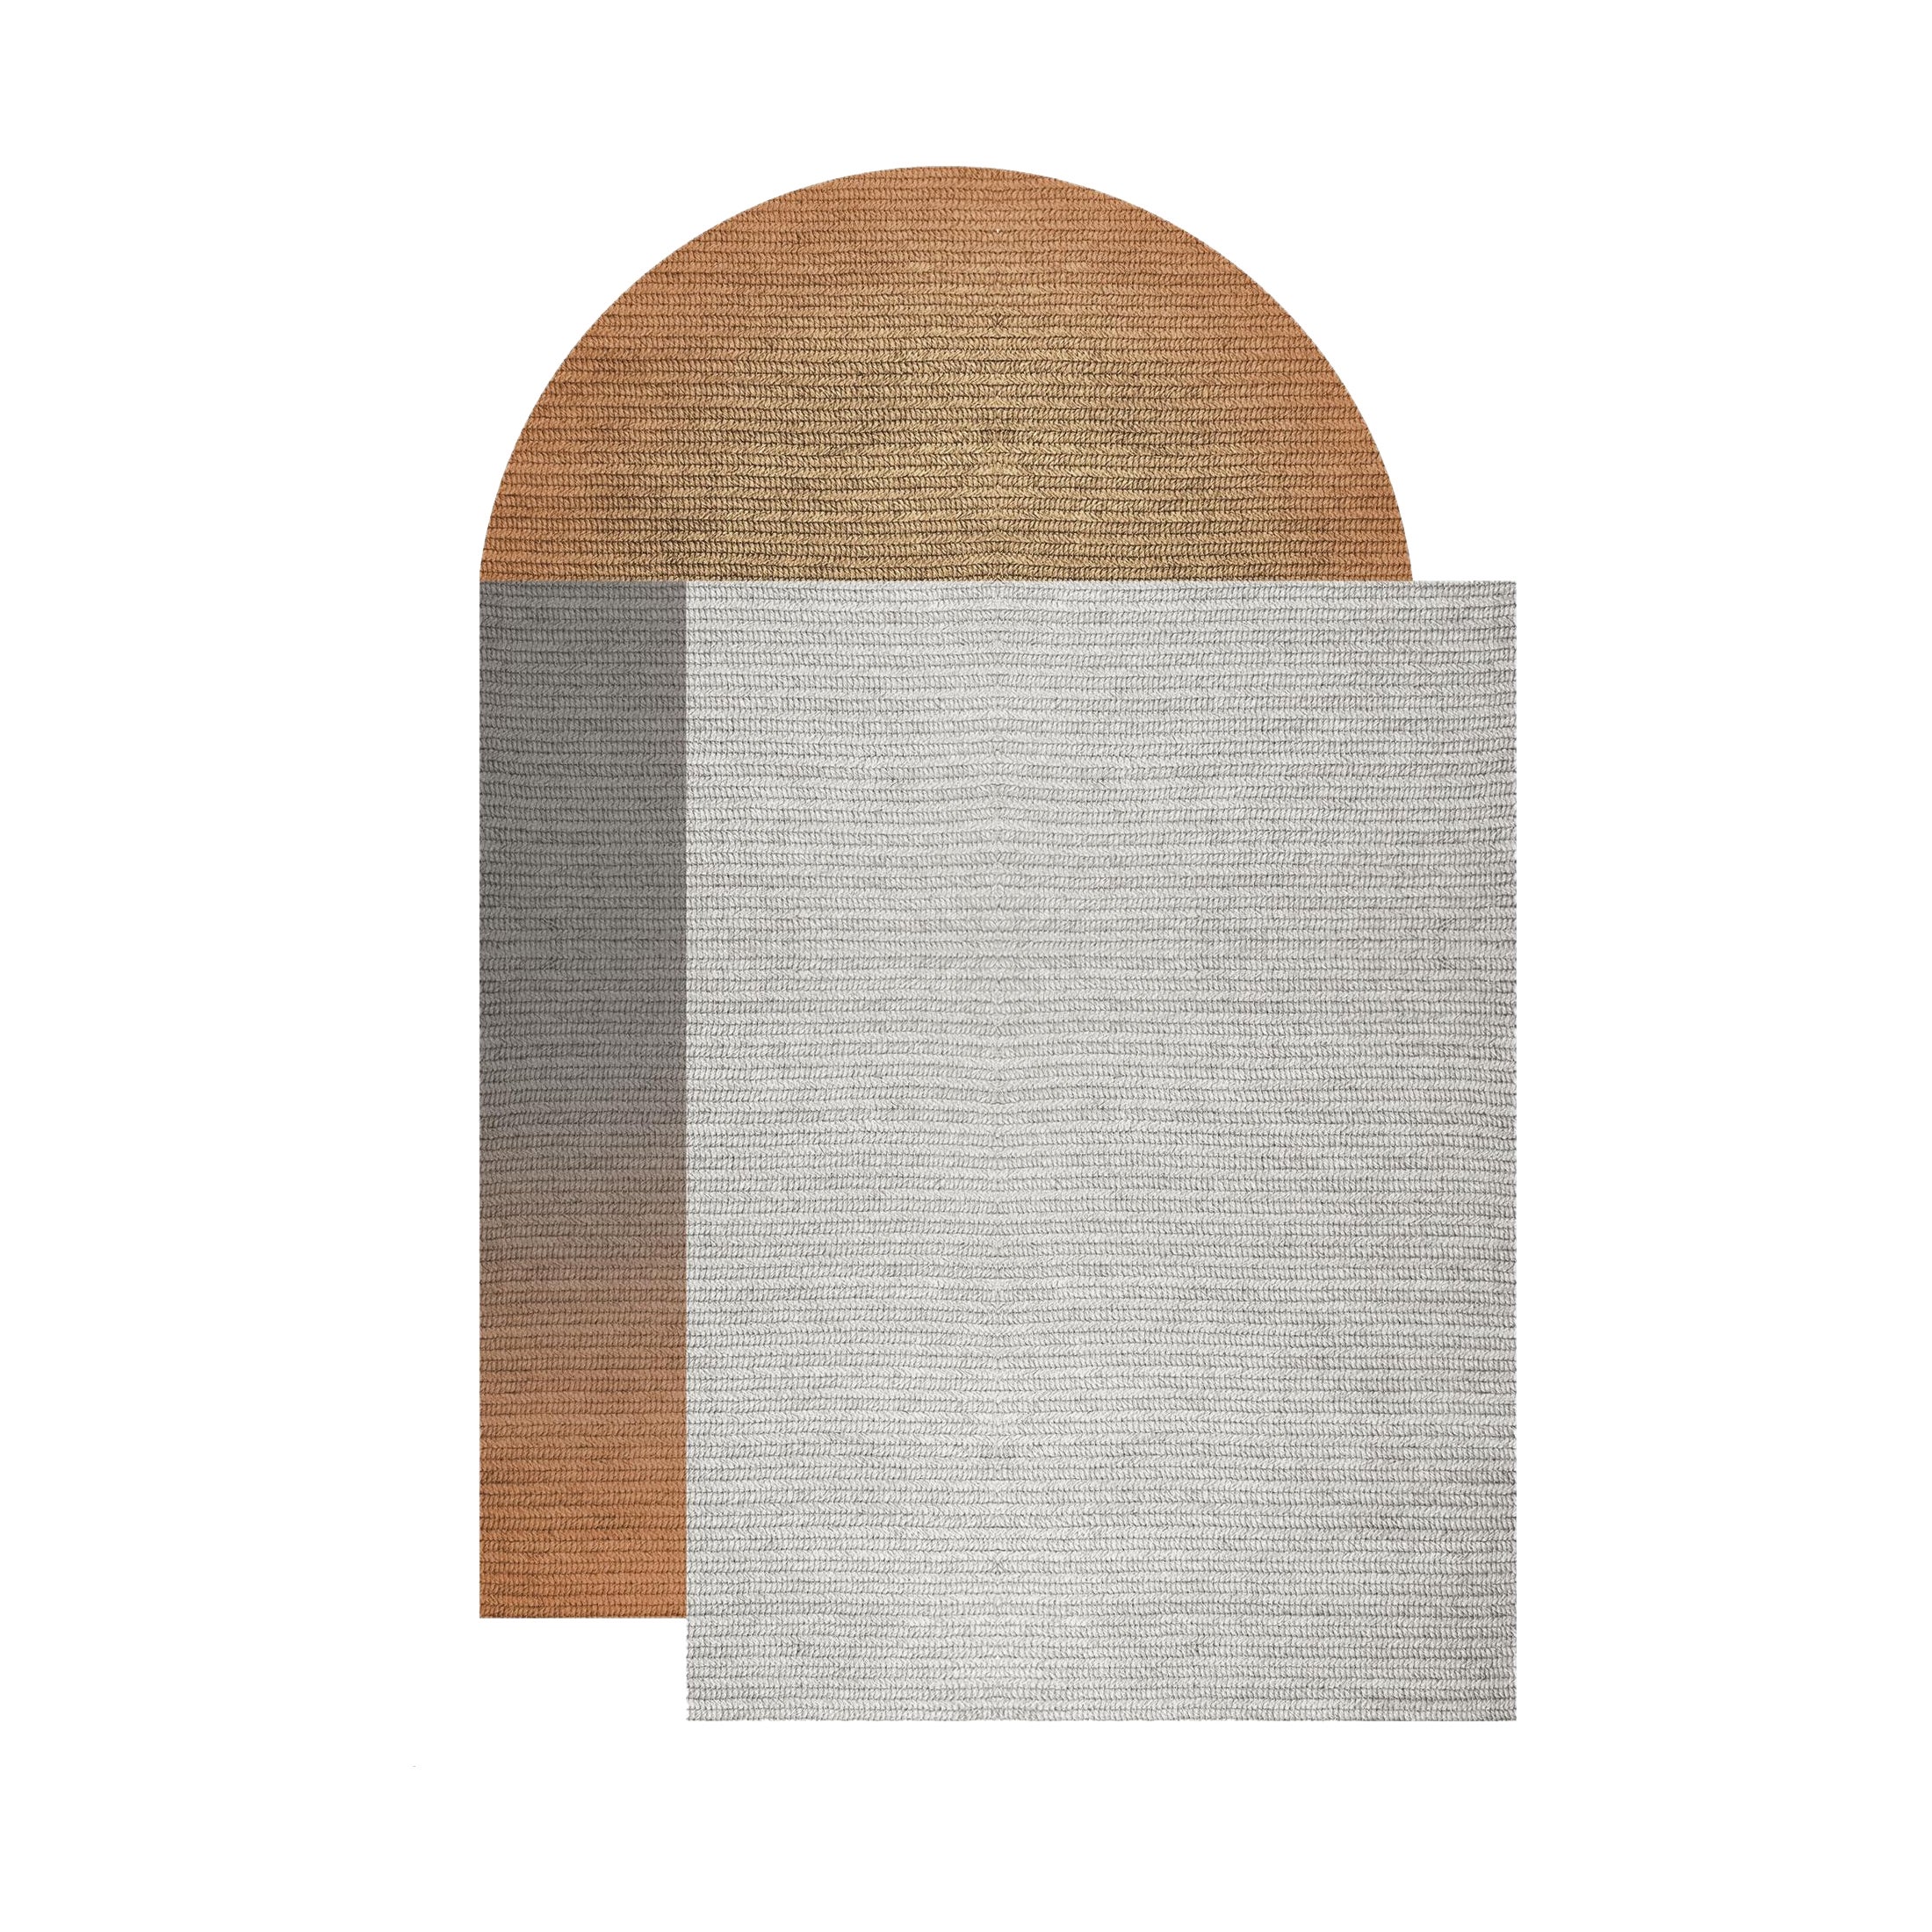 „Fade“-Teppich aus Abaca, Farbe „Mahogany“, 160x240cm, von Claire Vos für Musett Design